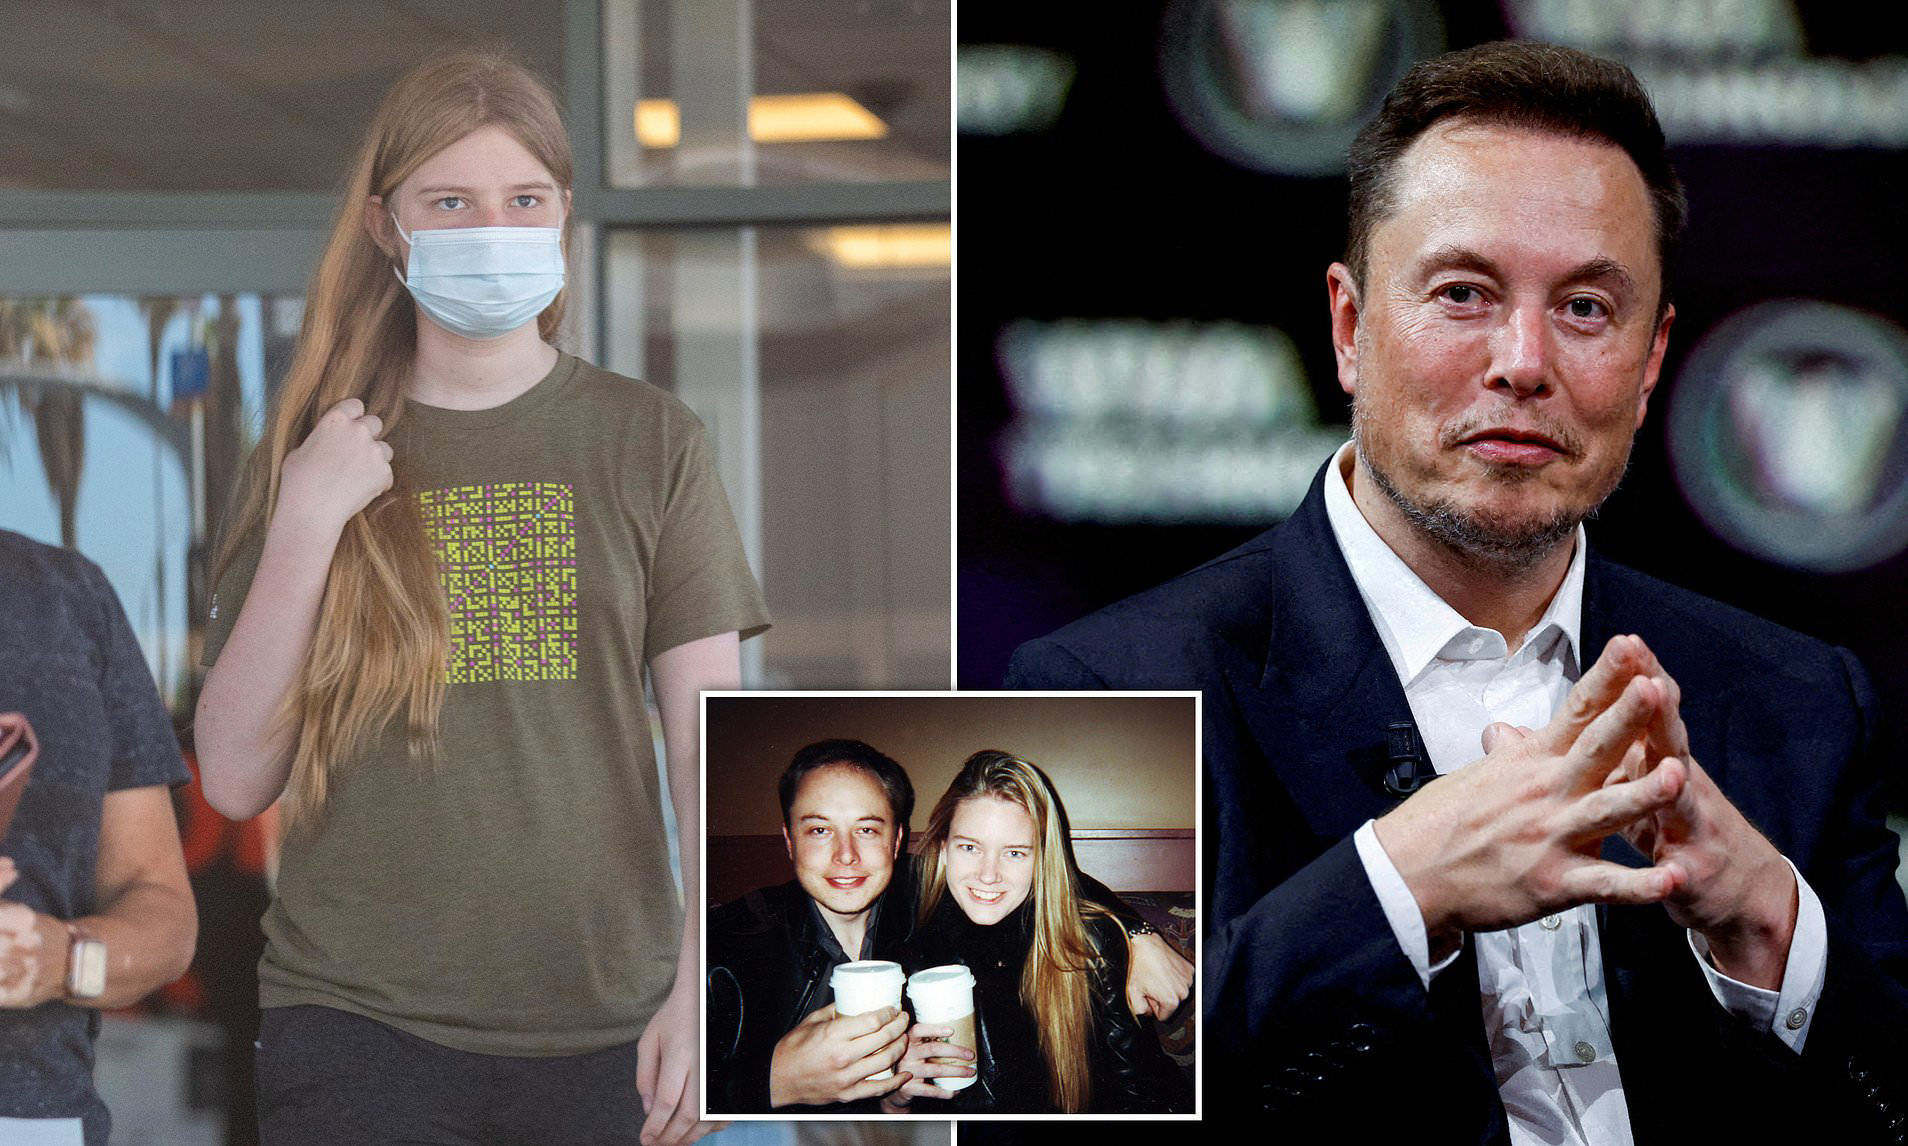 Meet Elon Musk's transgender daughter Vivian Jenna Wilson who he